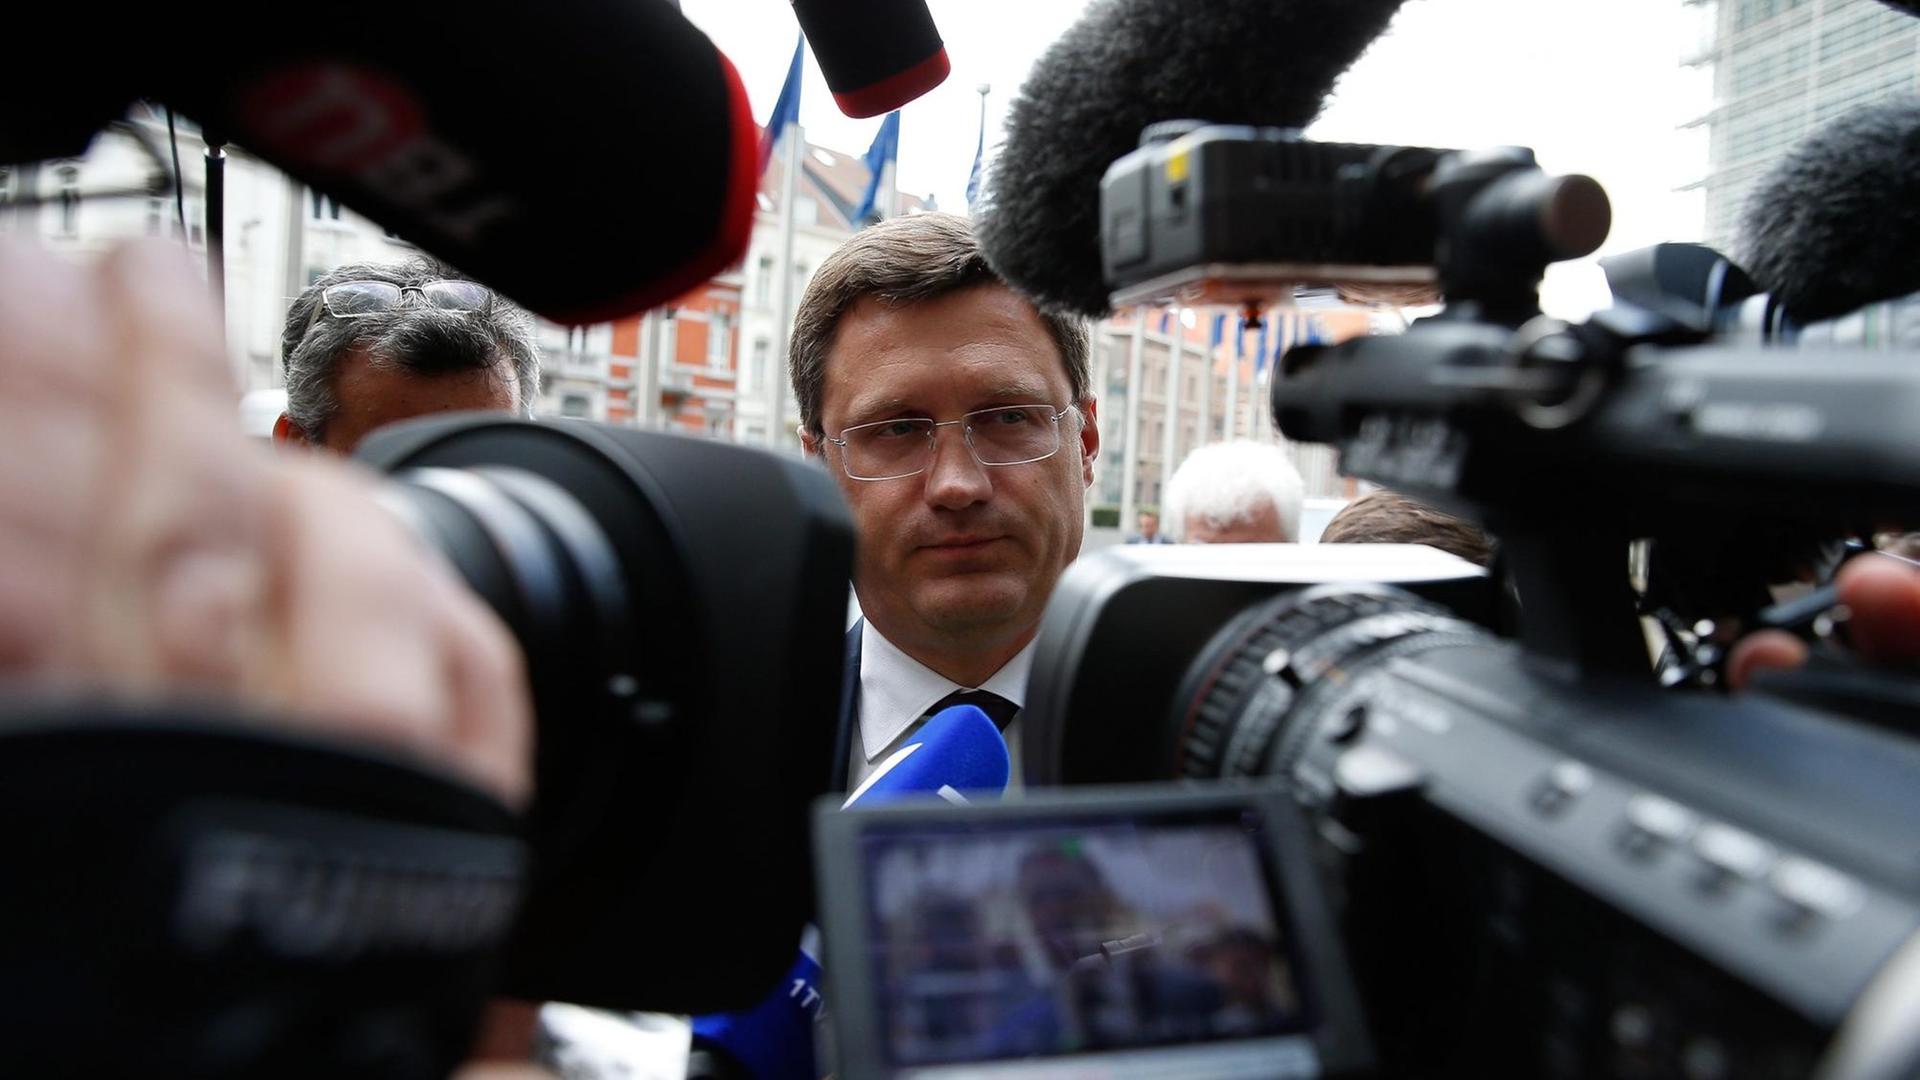 Kameras und Fotoapparate sind auf den russischen Energieminister Alexander Novak beim Treffen mit seinem ukrainischen Amtskollegen in Brüssel gerichtet.